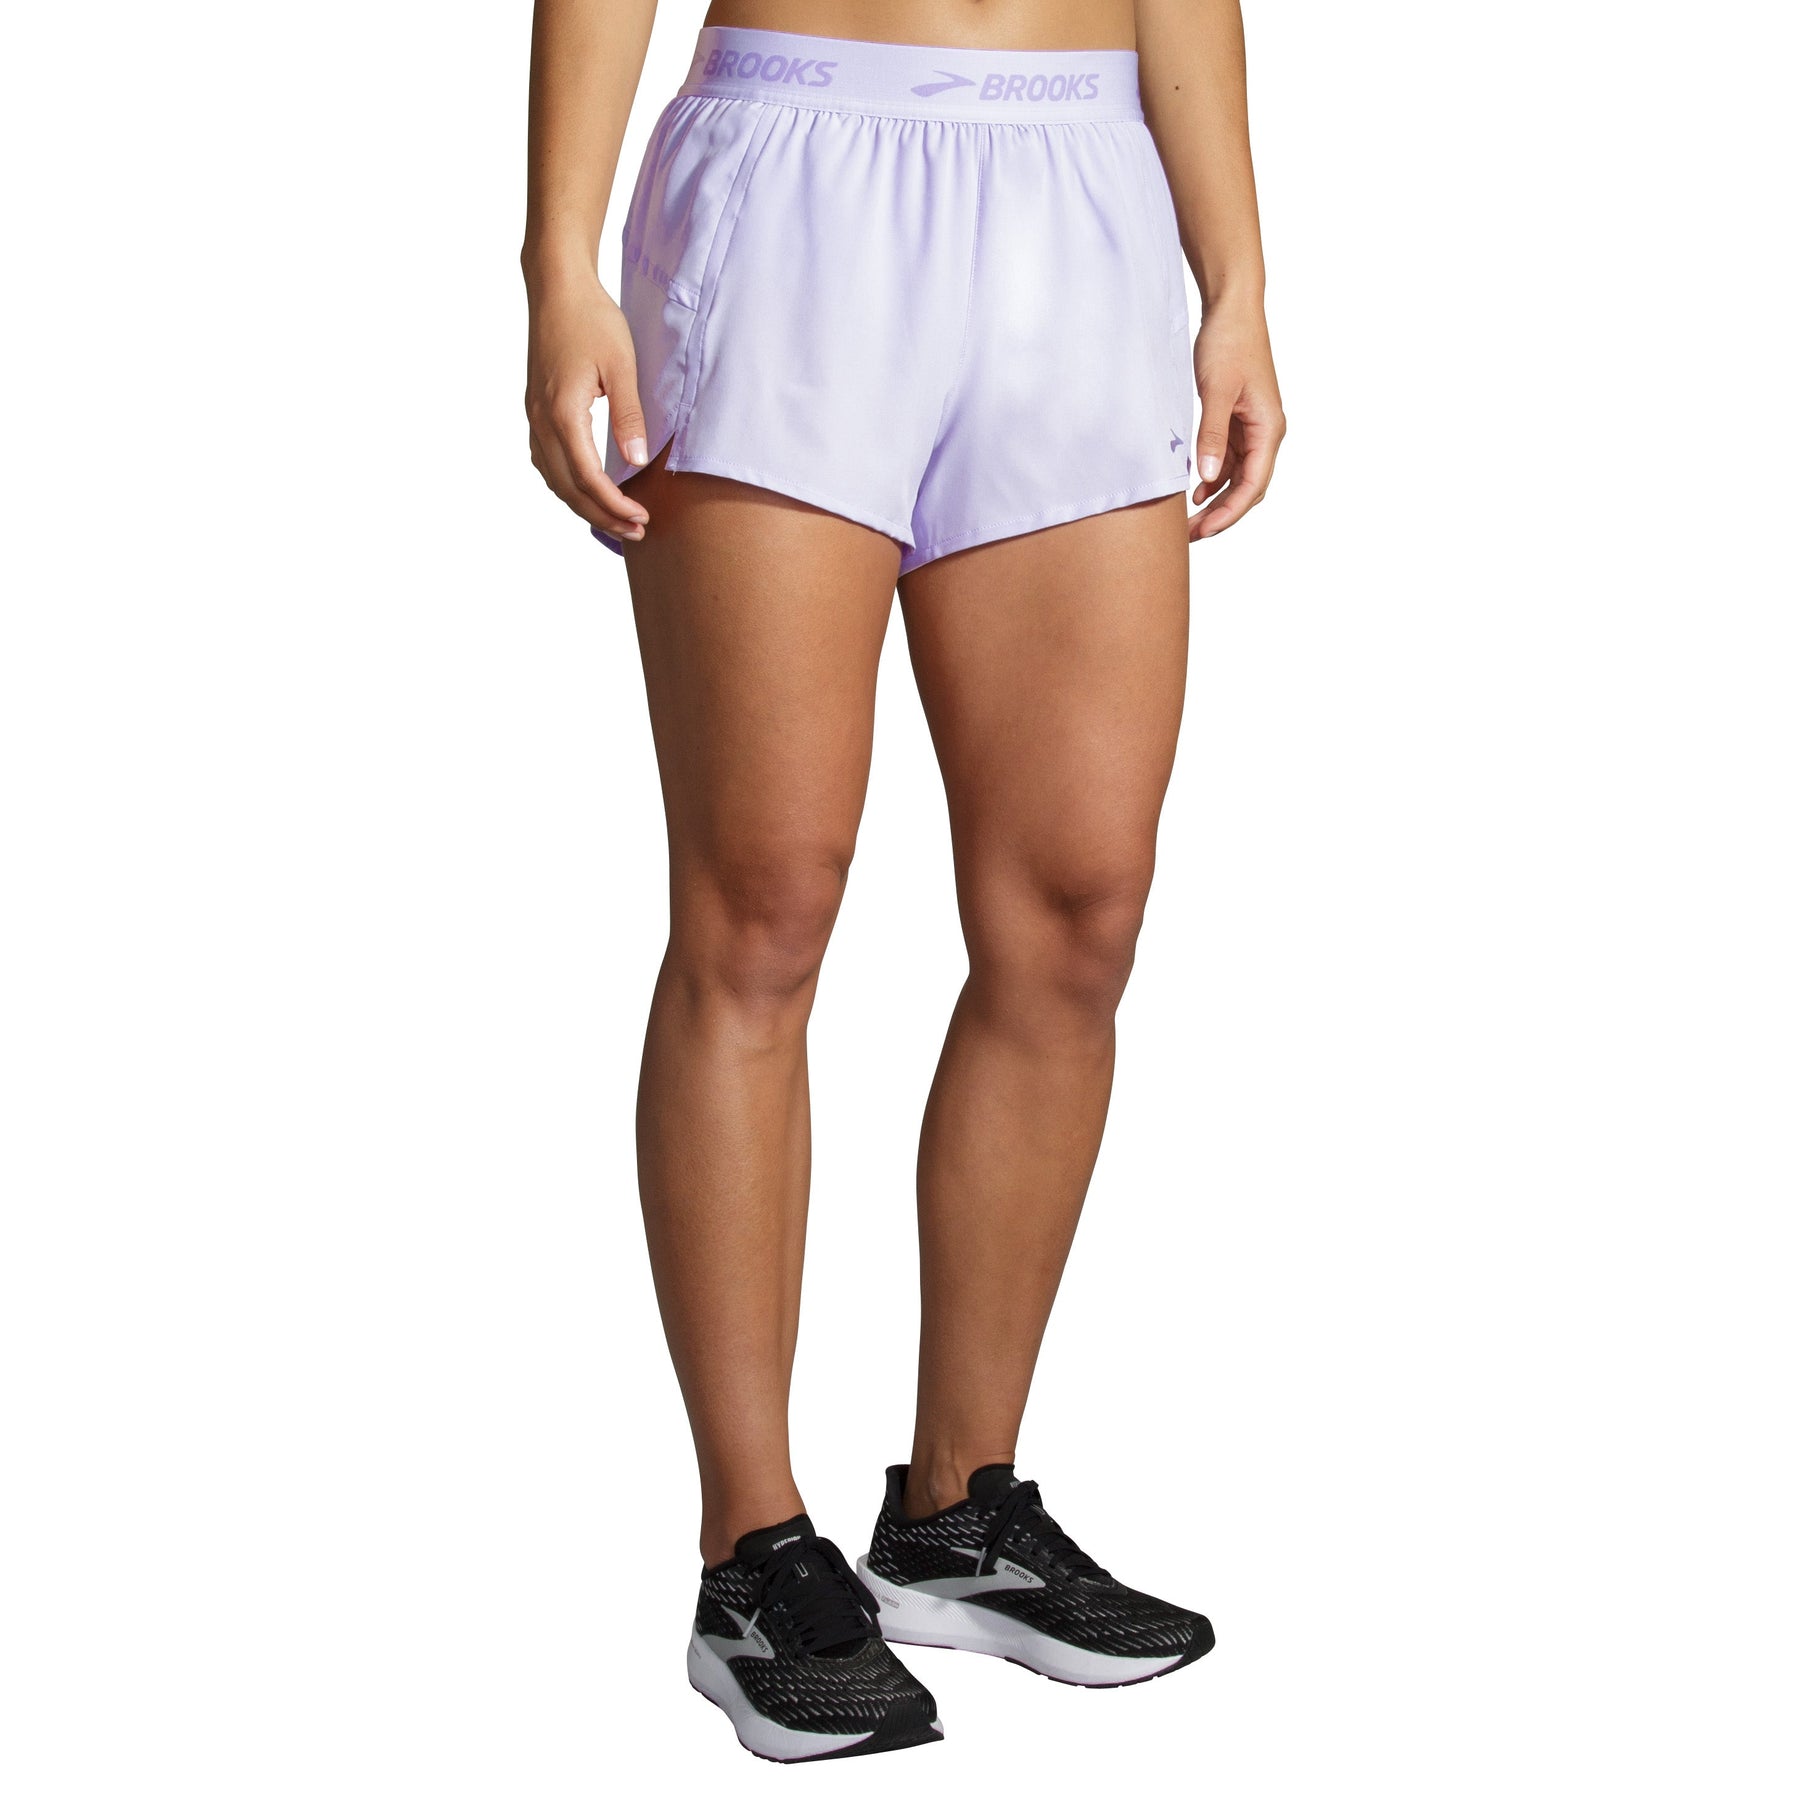 Waffled cotton short, Twik, Shop Women's Shorts & Bermuda Shorts Online